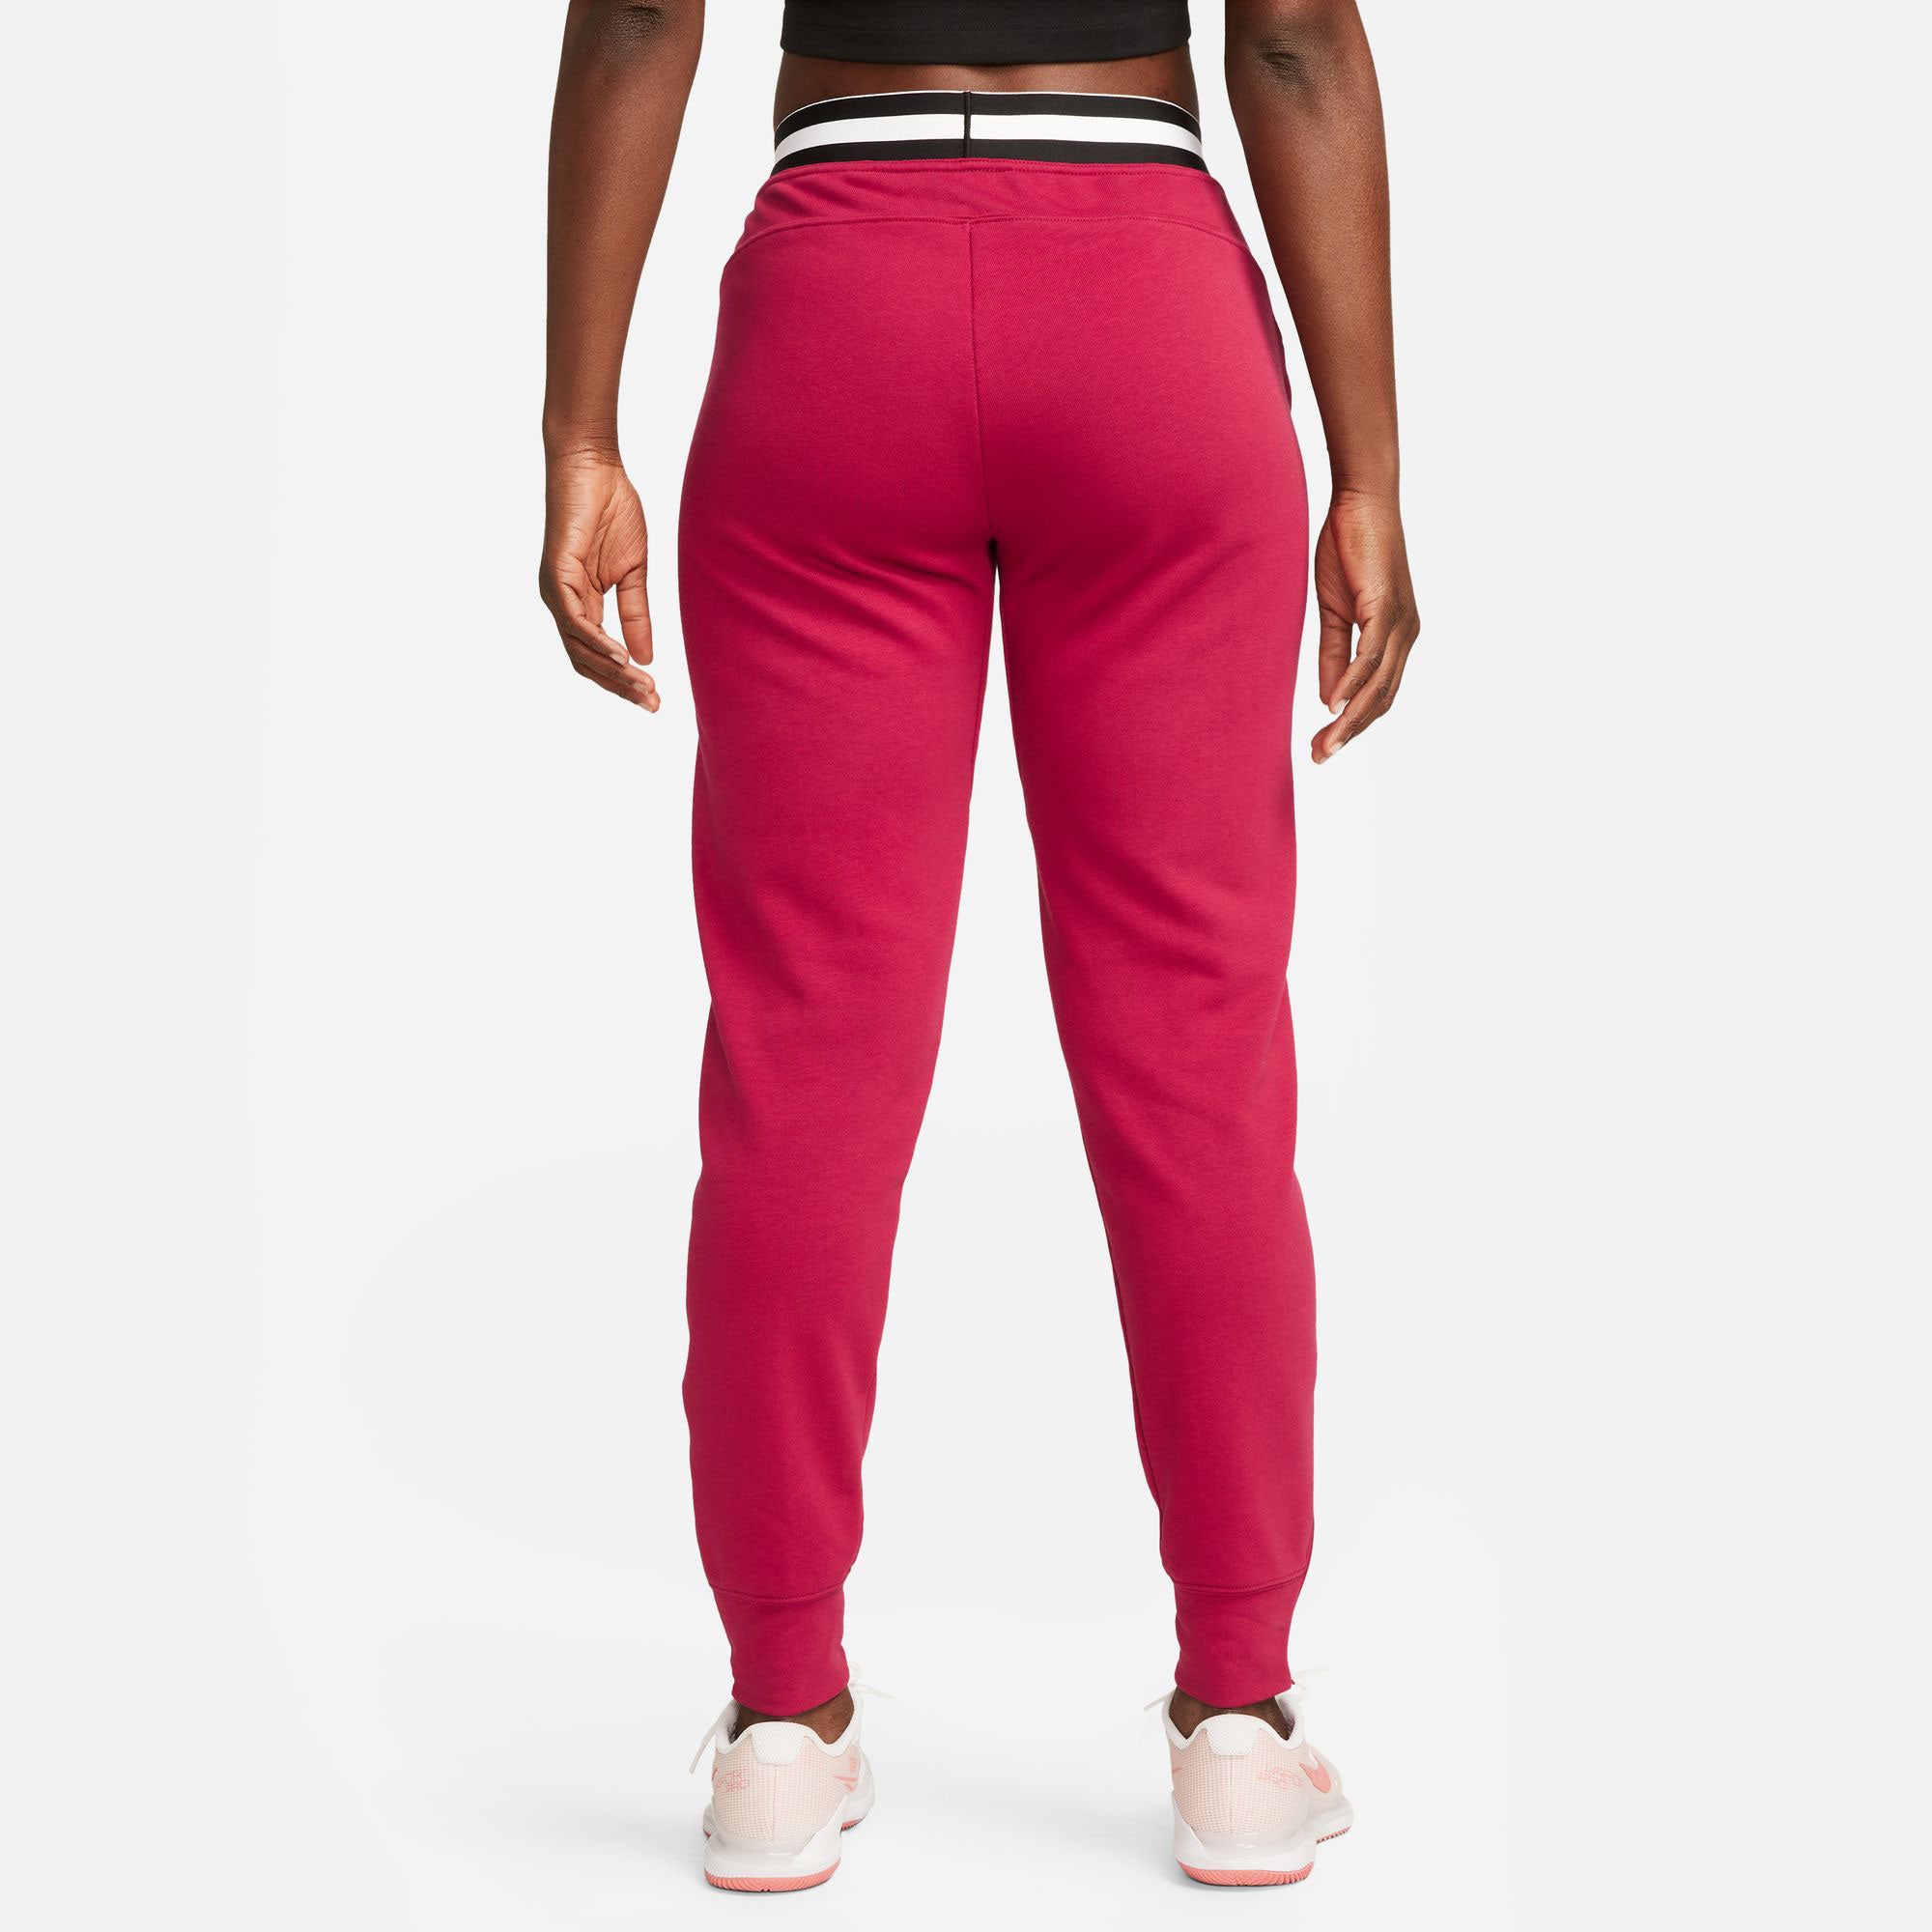 NikeCourt Dri-FIT Heritage Women's Fleece Tennis Pants Red (2)